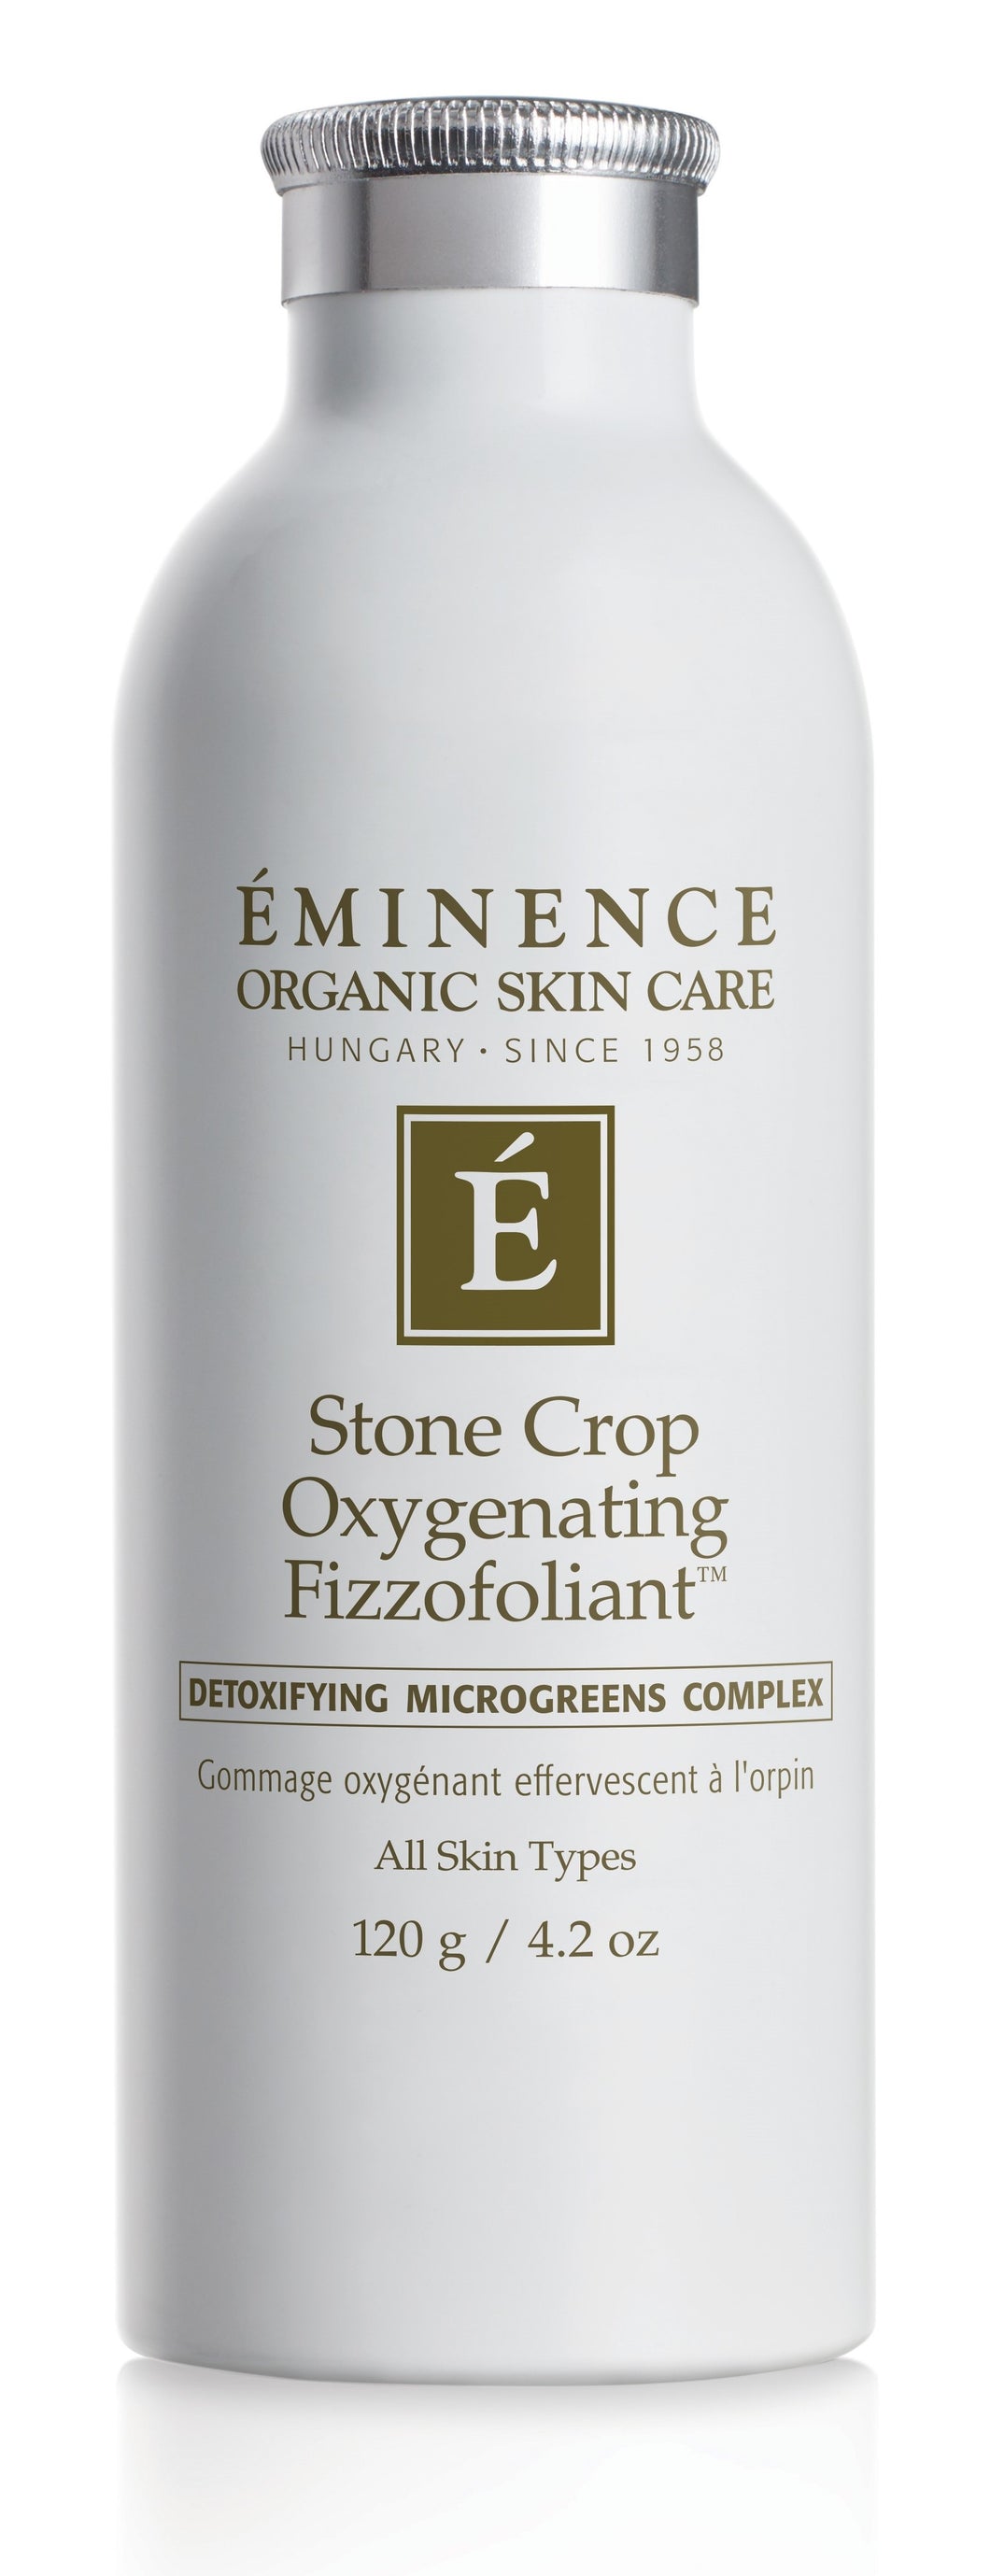 Eminence: Stone Crop Oxygenating Fizzofoliant